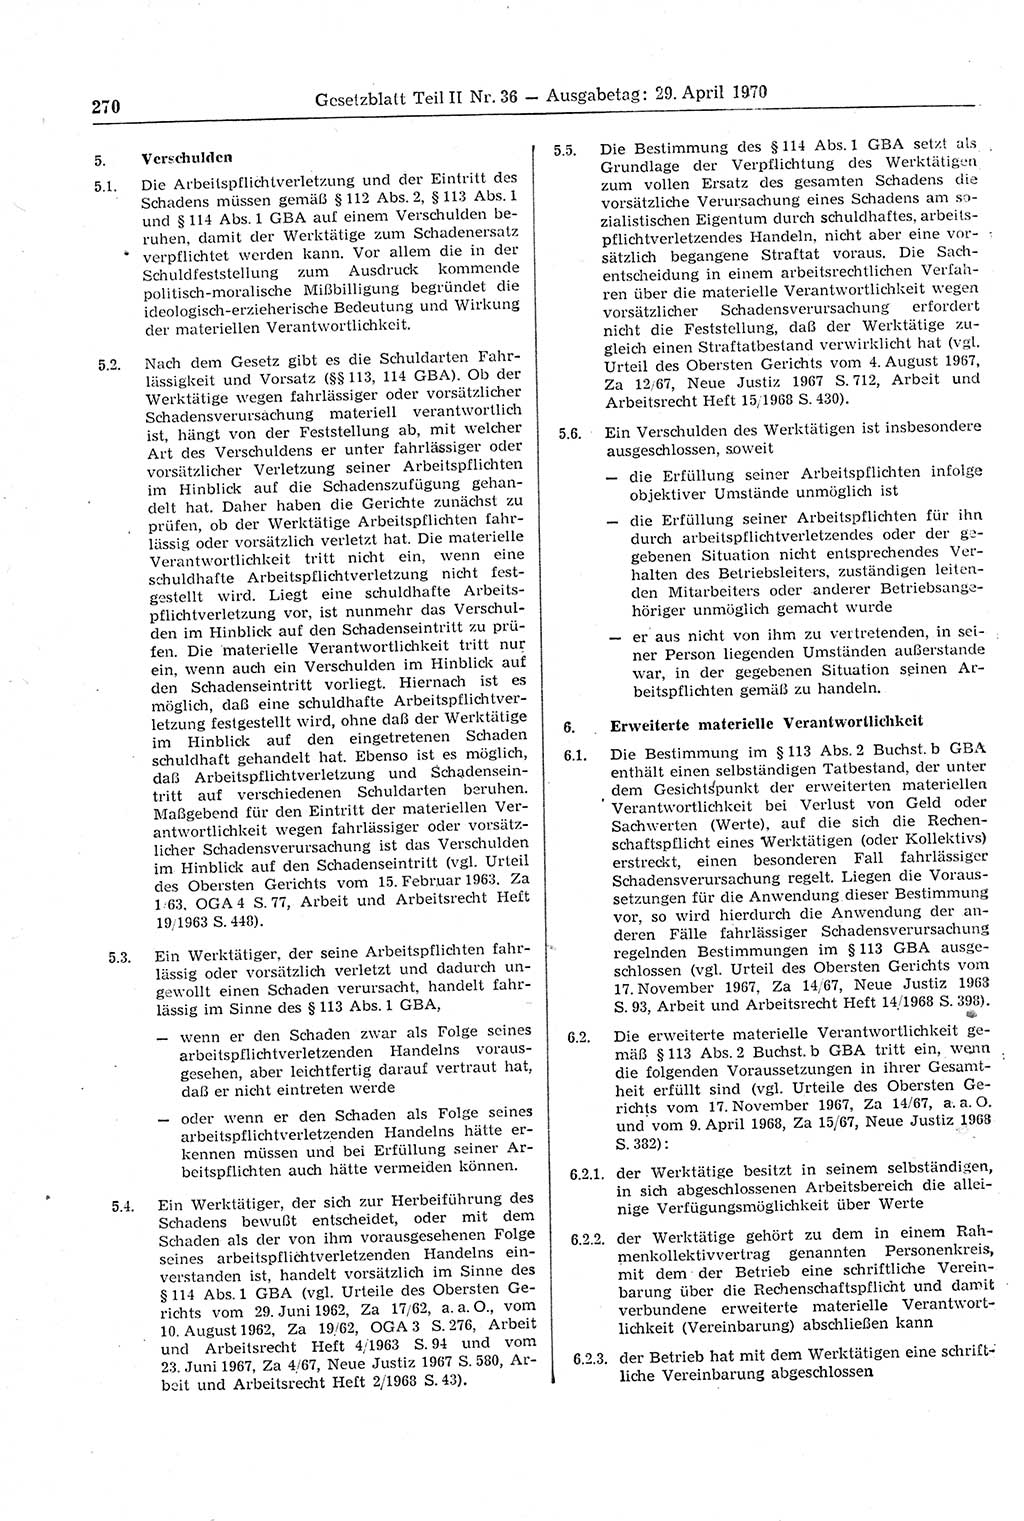 Gesetzblatt (GBl.) der Deutschen Demokratischen Republik (DDR) Teil ⅠⅠ 1970, Seite 270 (GBl. DDR ⅠⅠ 1970, S. 270)